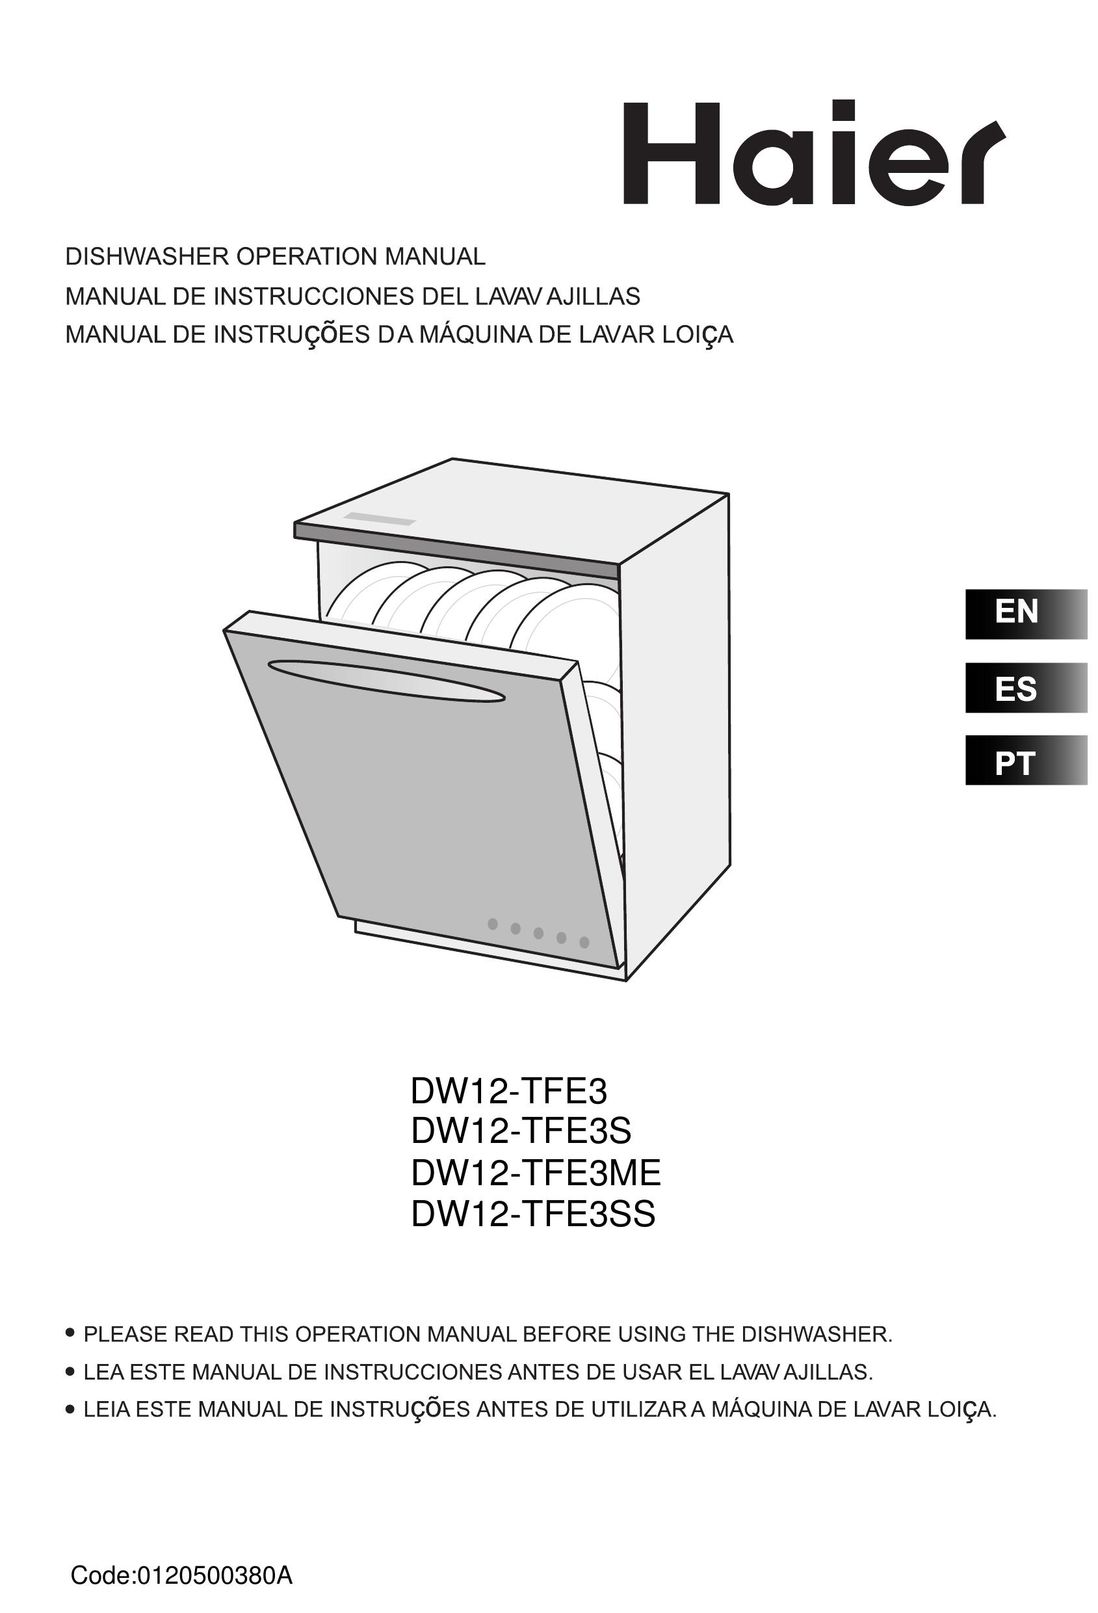 Haier DW12-TFE3ME Dishwasher User Manual